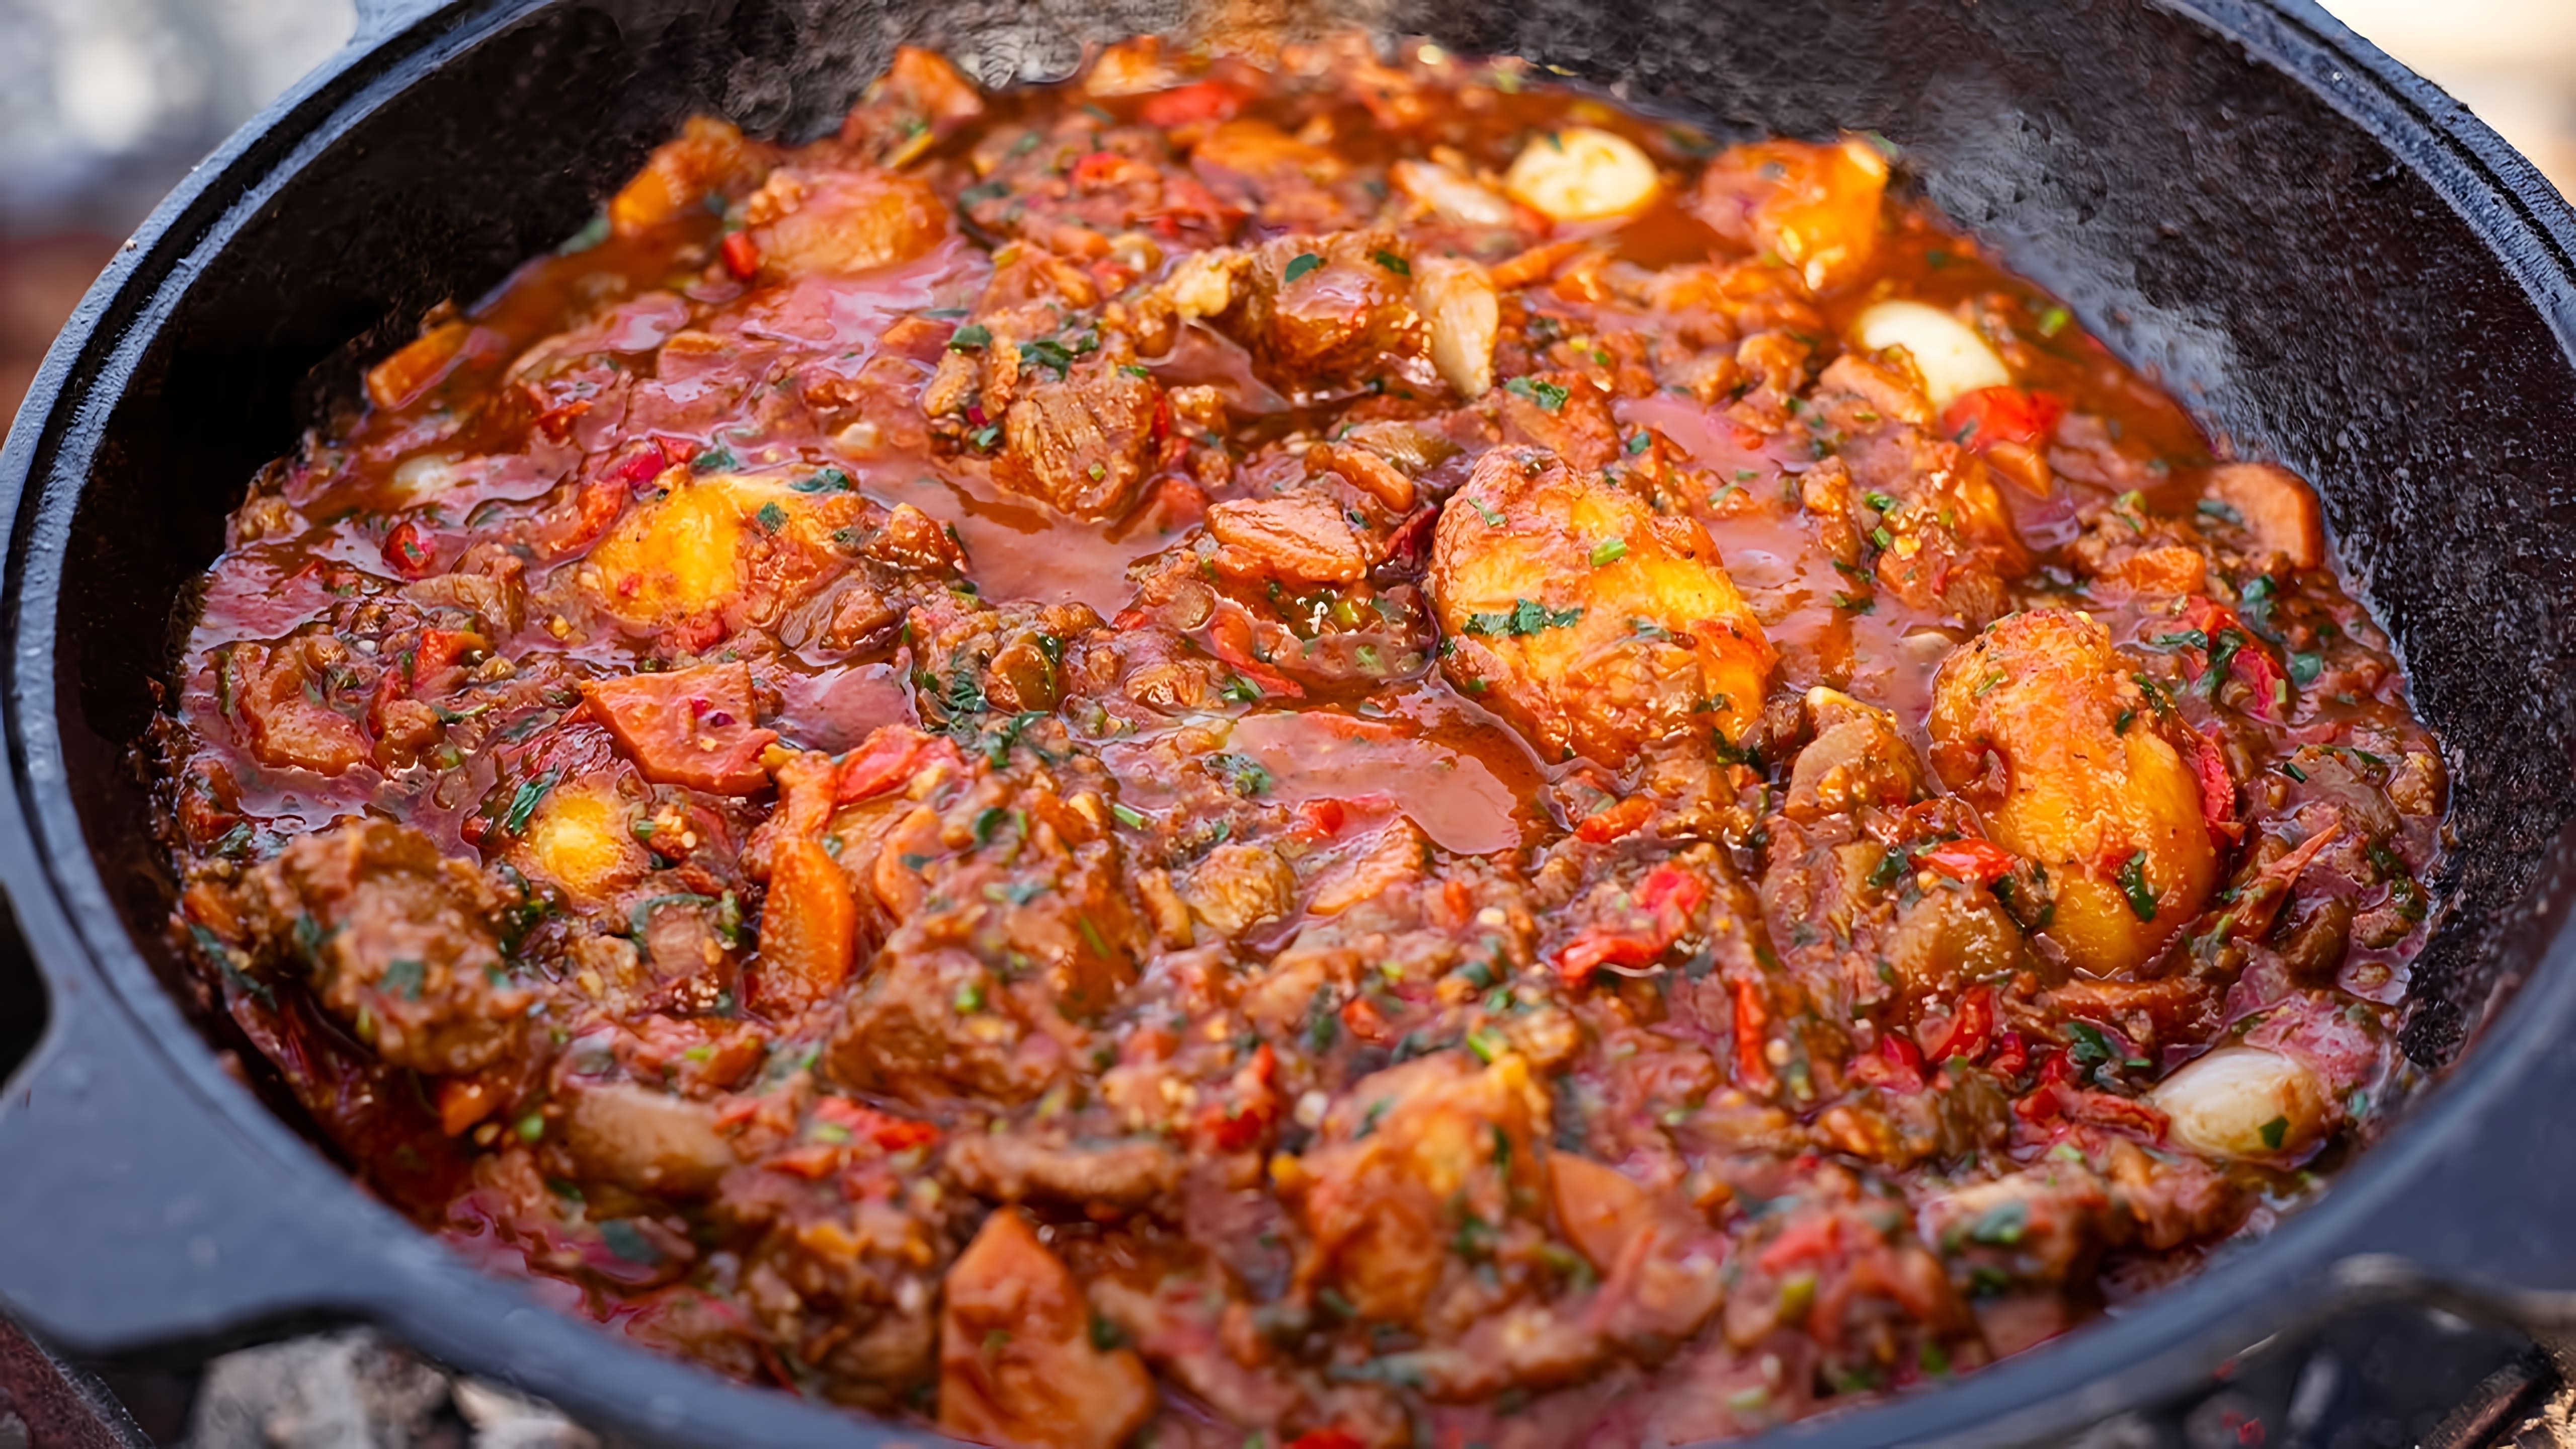 В этом видео демонстрируется процесс приготовления грузинского блюда "Хорциани" - картошки с мясом в казане на костре